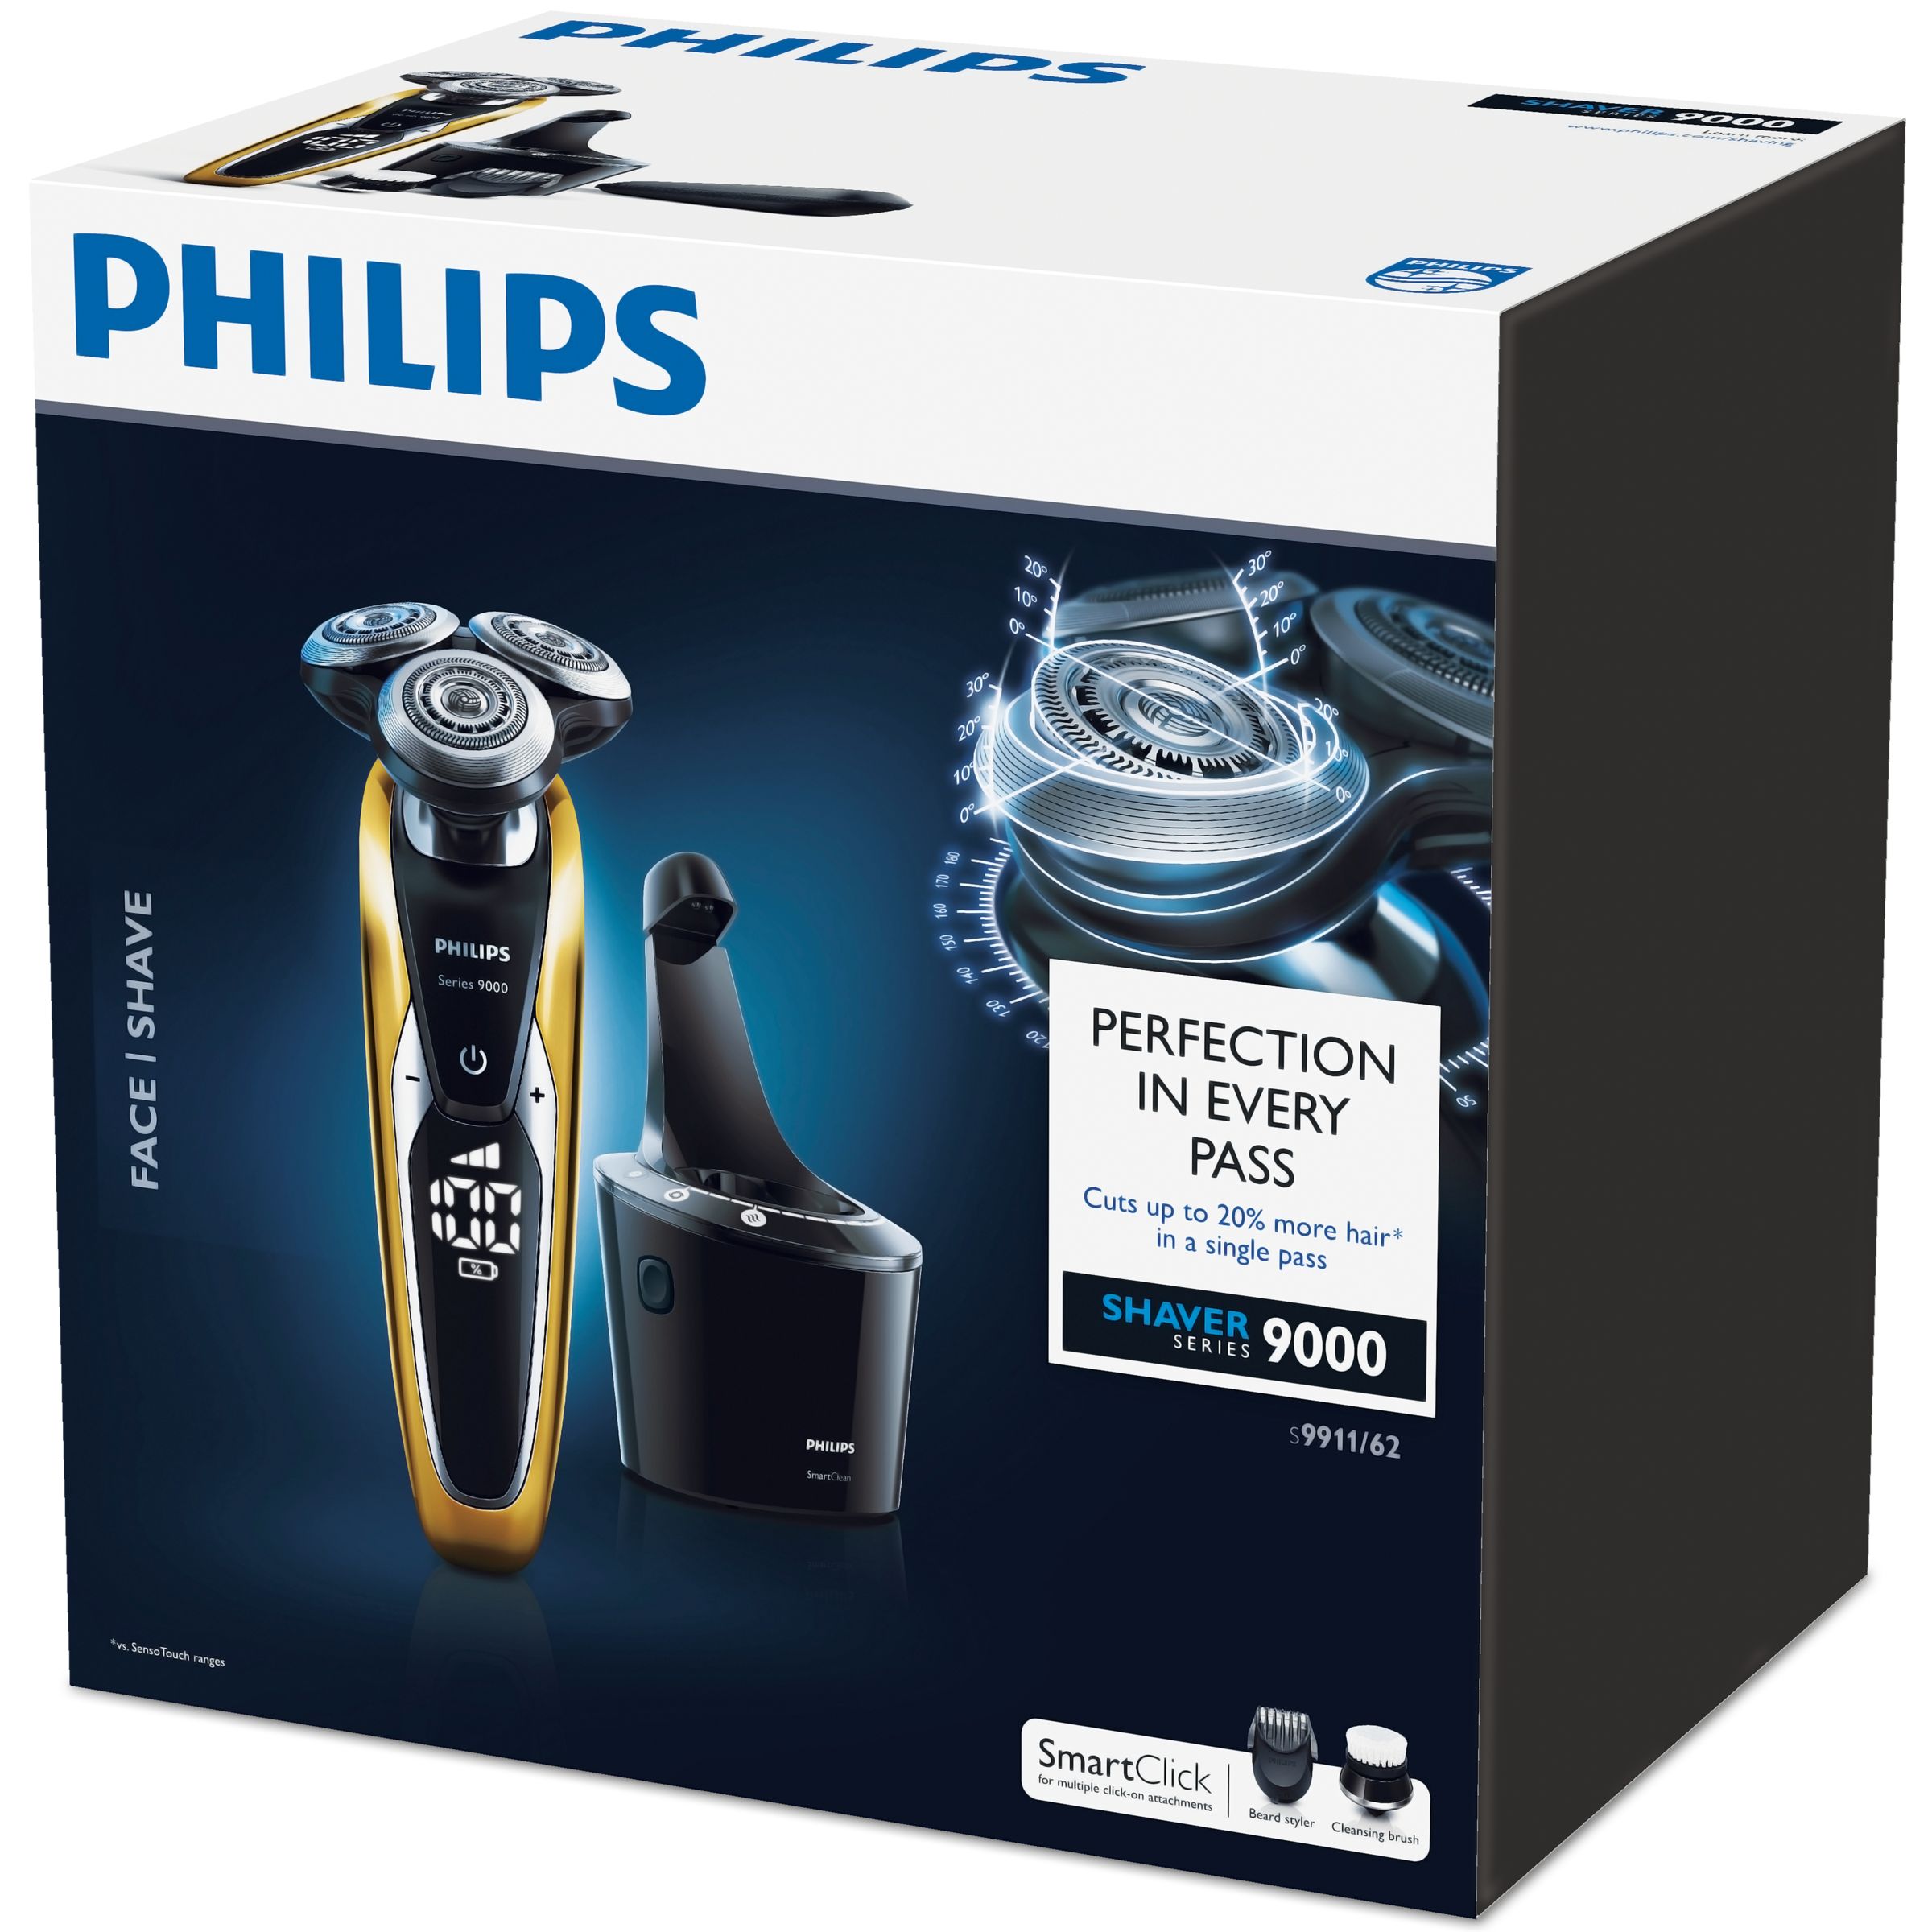 Филипс страна производитель. Philips Series 9000. Бритва Филипс 9000 комплектация. Shaver Philips x3002/00. Philips Series 9911/62.